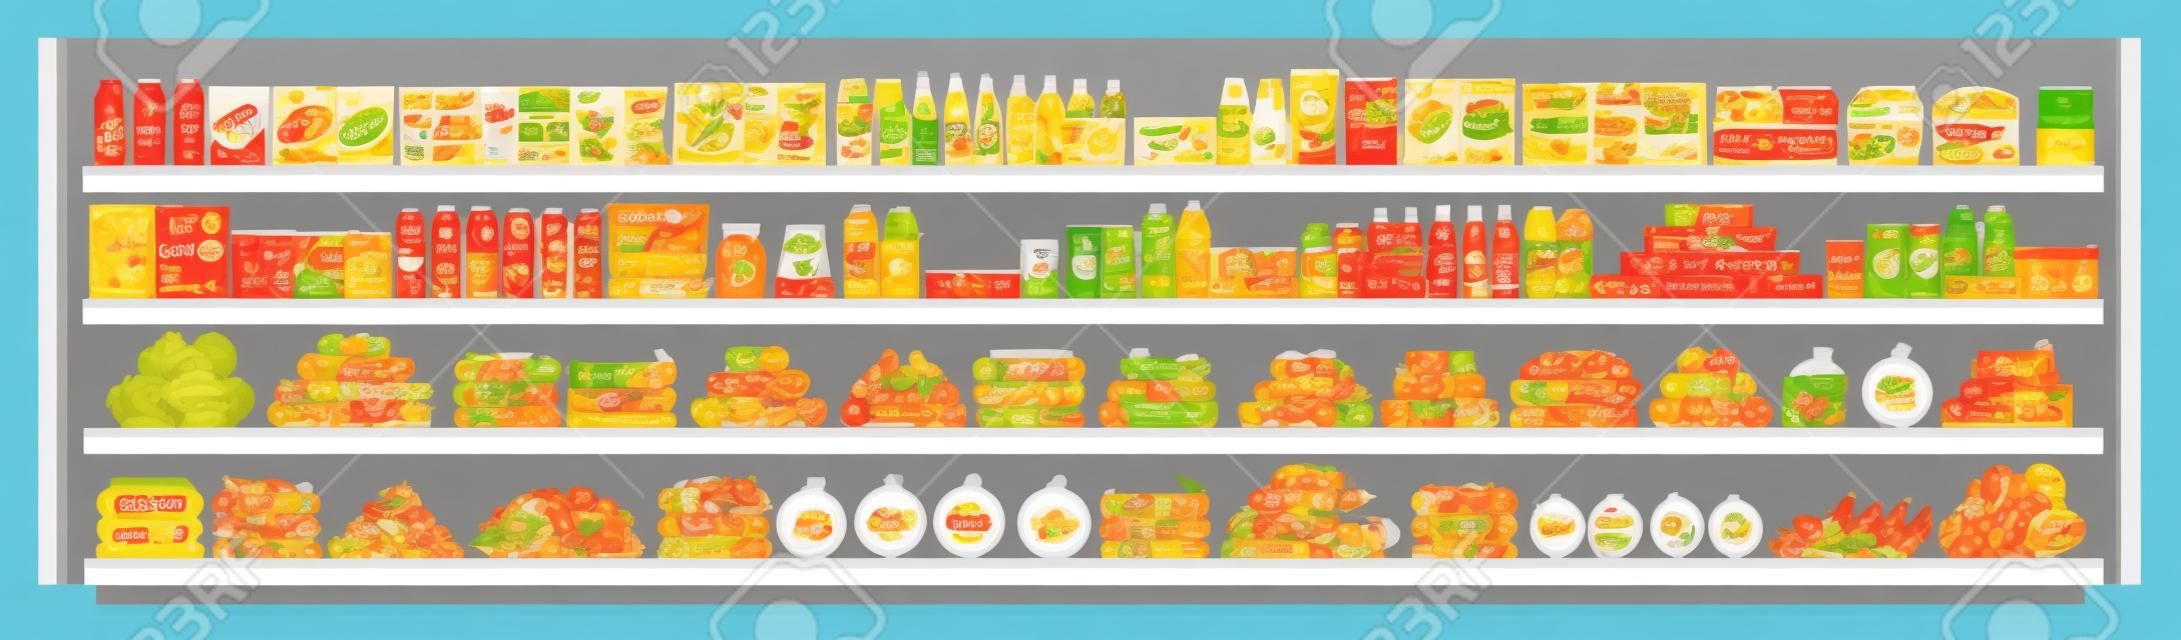 Levensmiddelenwinkel items op de supermarkt planken en biedt vol met assortiment van voedsel en dranken vlakke vector naadloze achtergrond illustratie. Winkelen en retail concept.